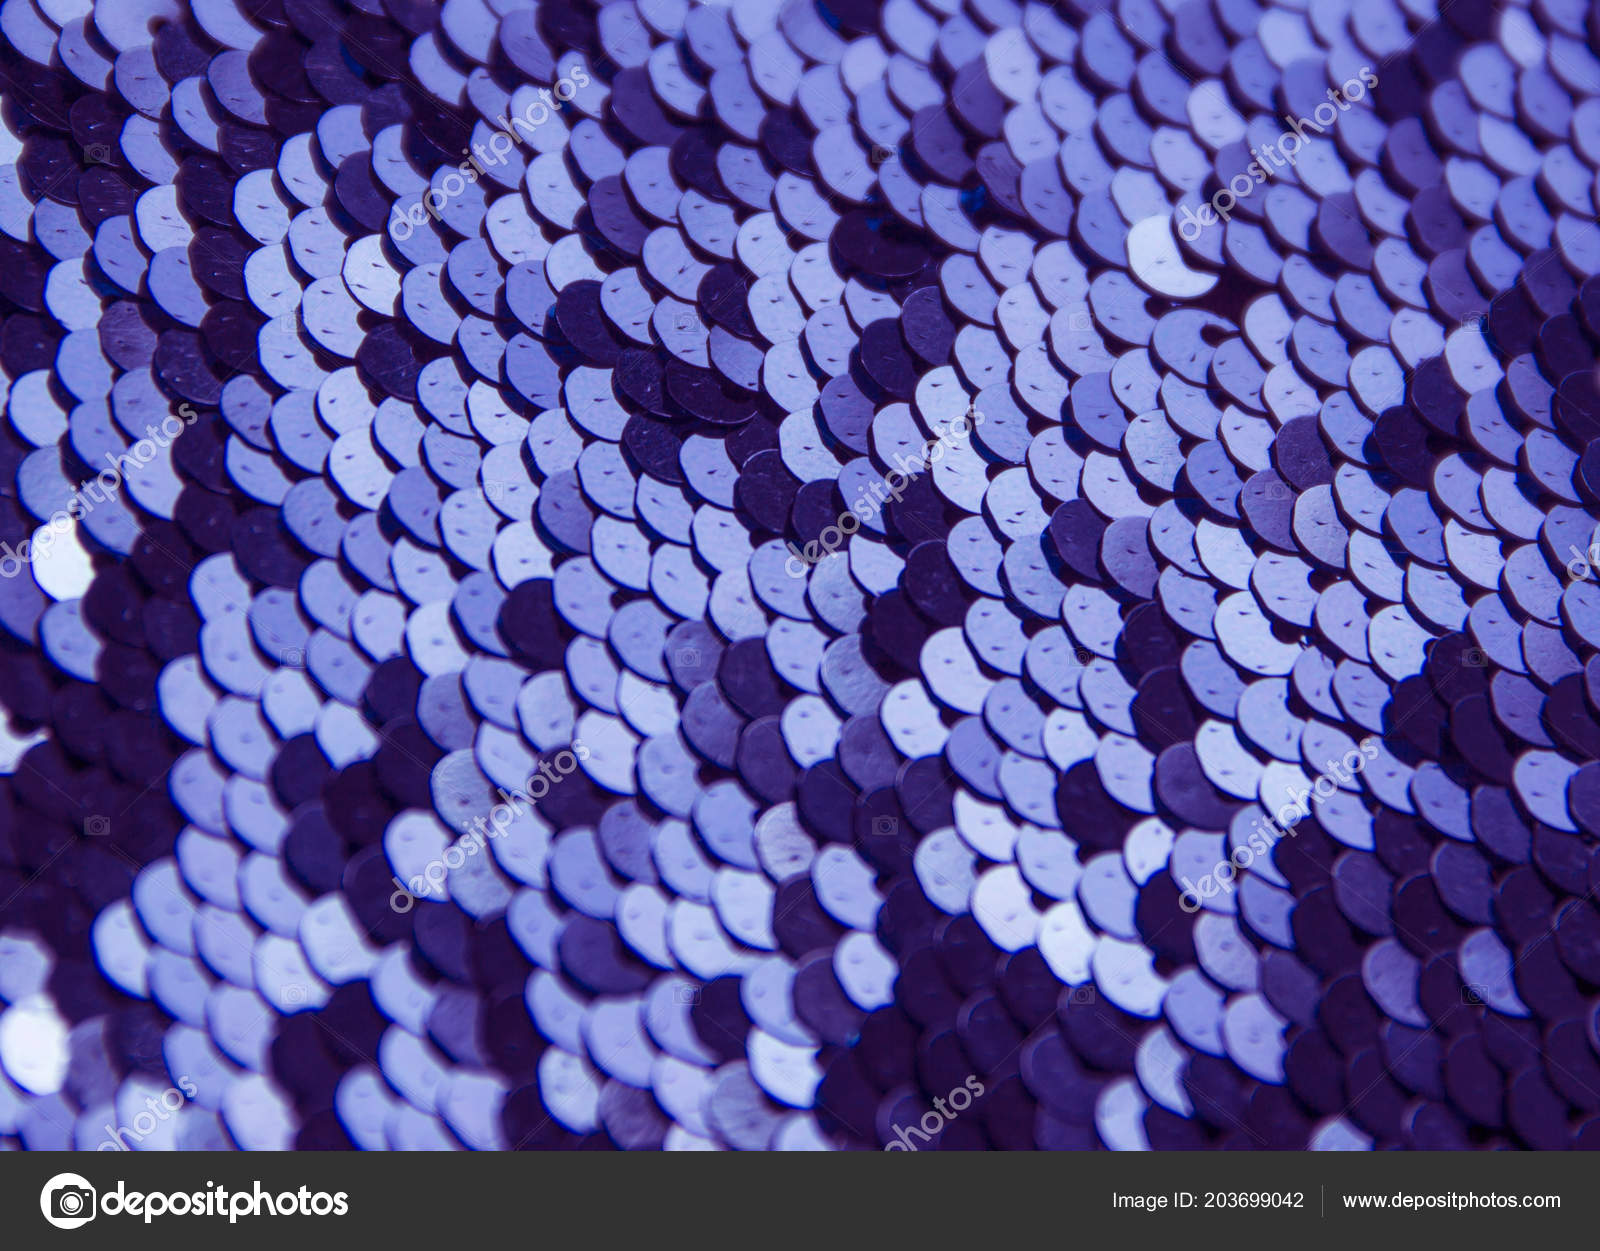 テクスチャ背景ラウンド シルバー色の暗い部分と明るい輝き紫のスパンコール ストック写真 C Bonderolkat